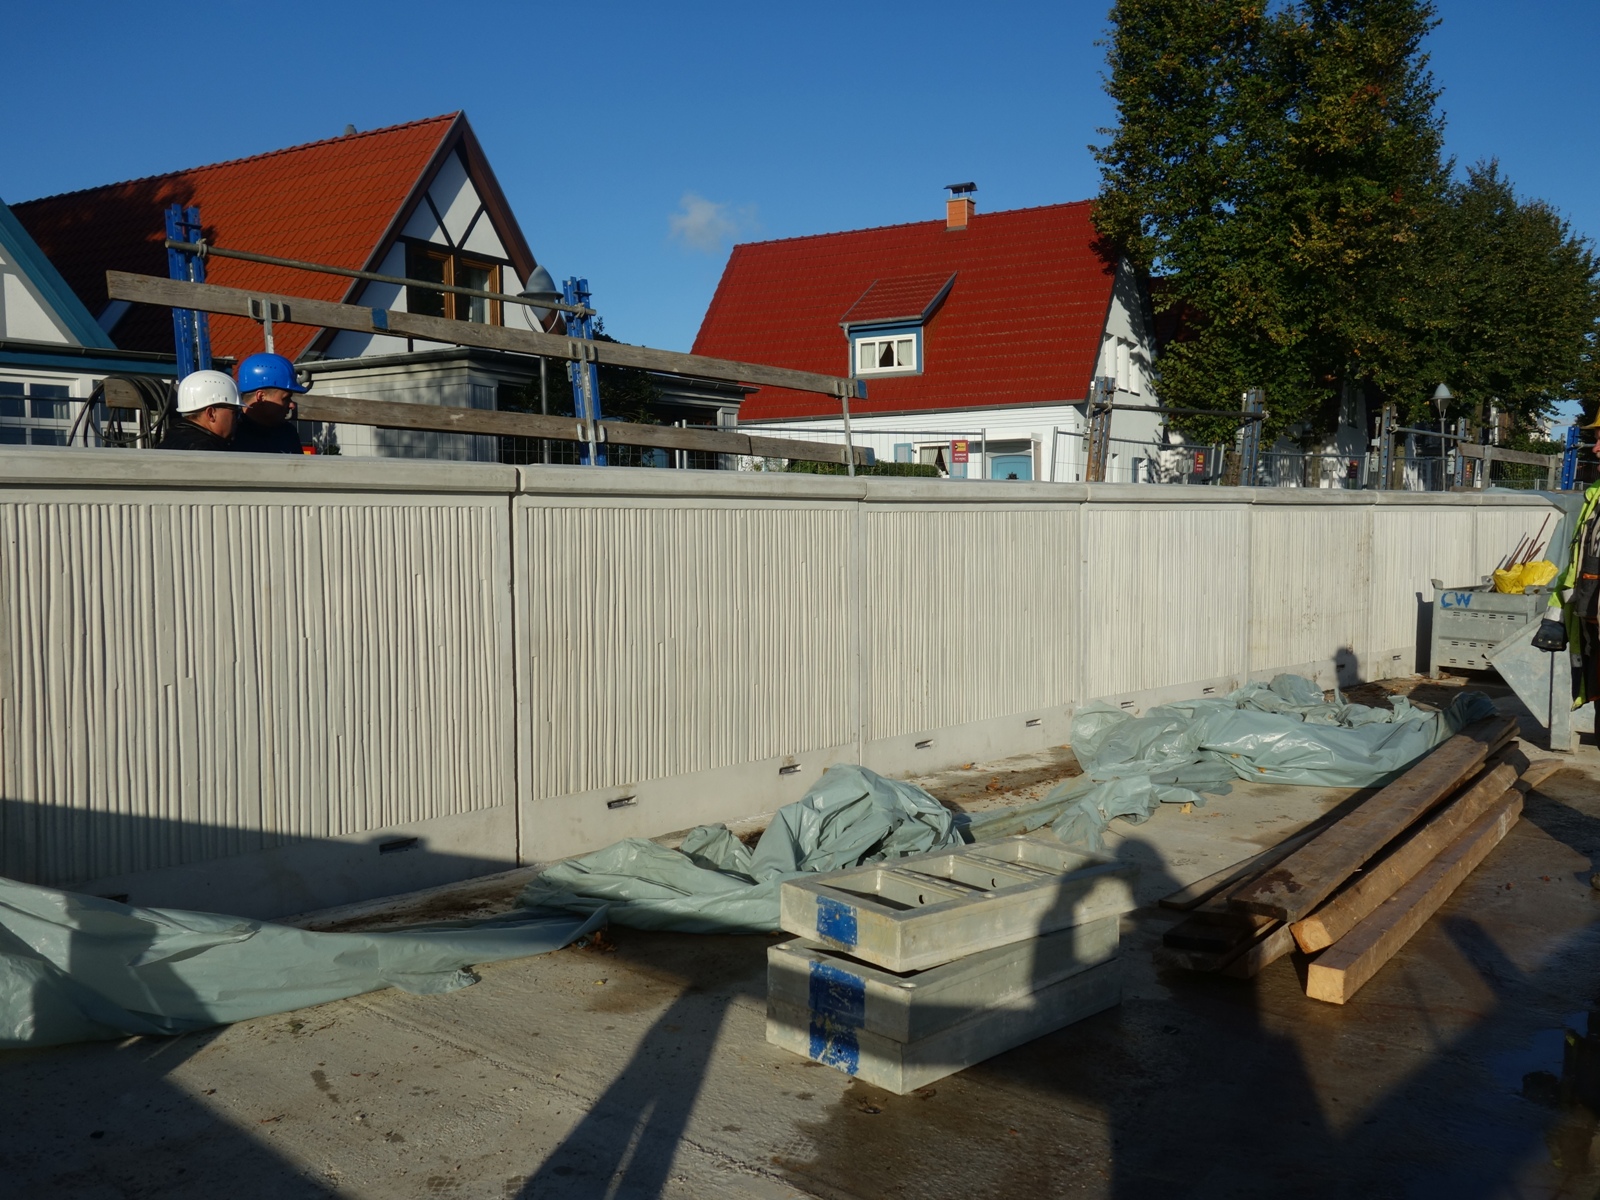 Ansichtssache: Die strukturierte Oberfläche der Betonmodule ist des Öfteren in Rostock wiederzufinden. Es lässt sich bereits erahnen, wie das spätere Gesamtbild wirkt.